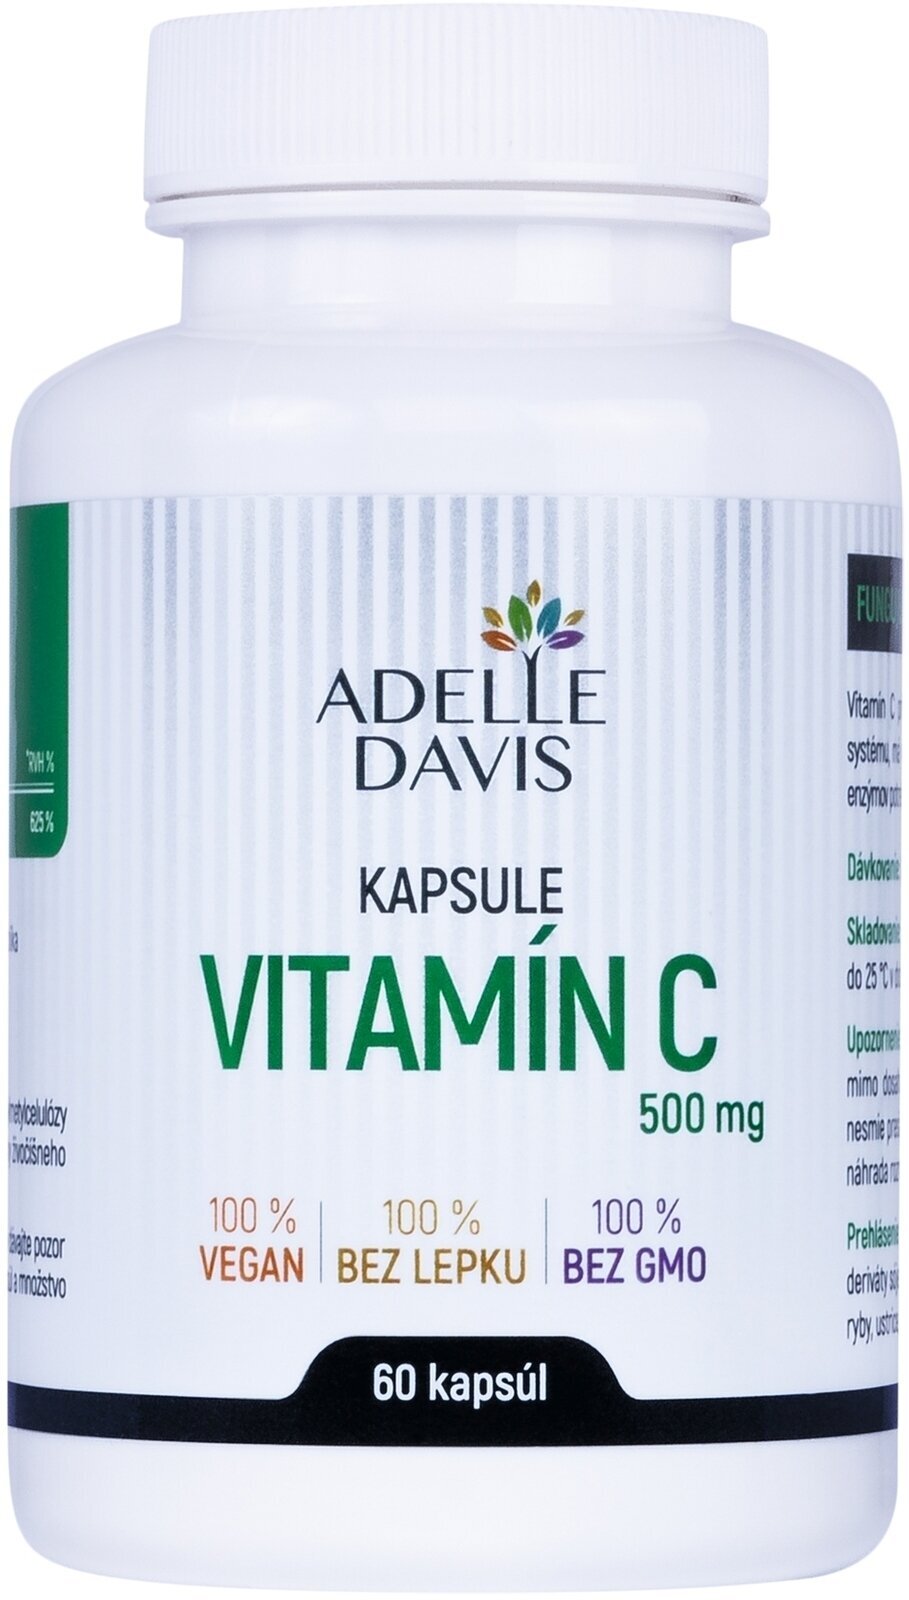 Vitamine C Adelle Davis Vitamin C Vitamine C